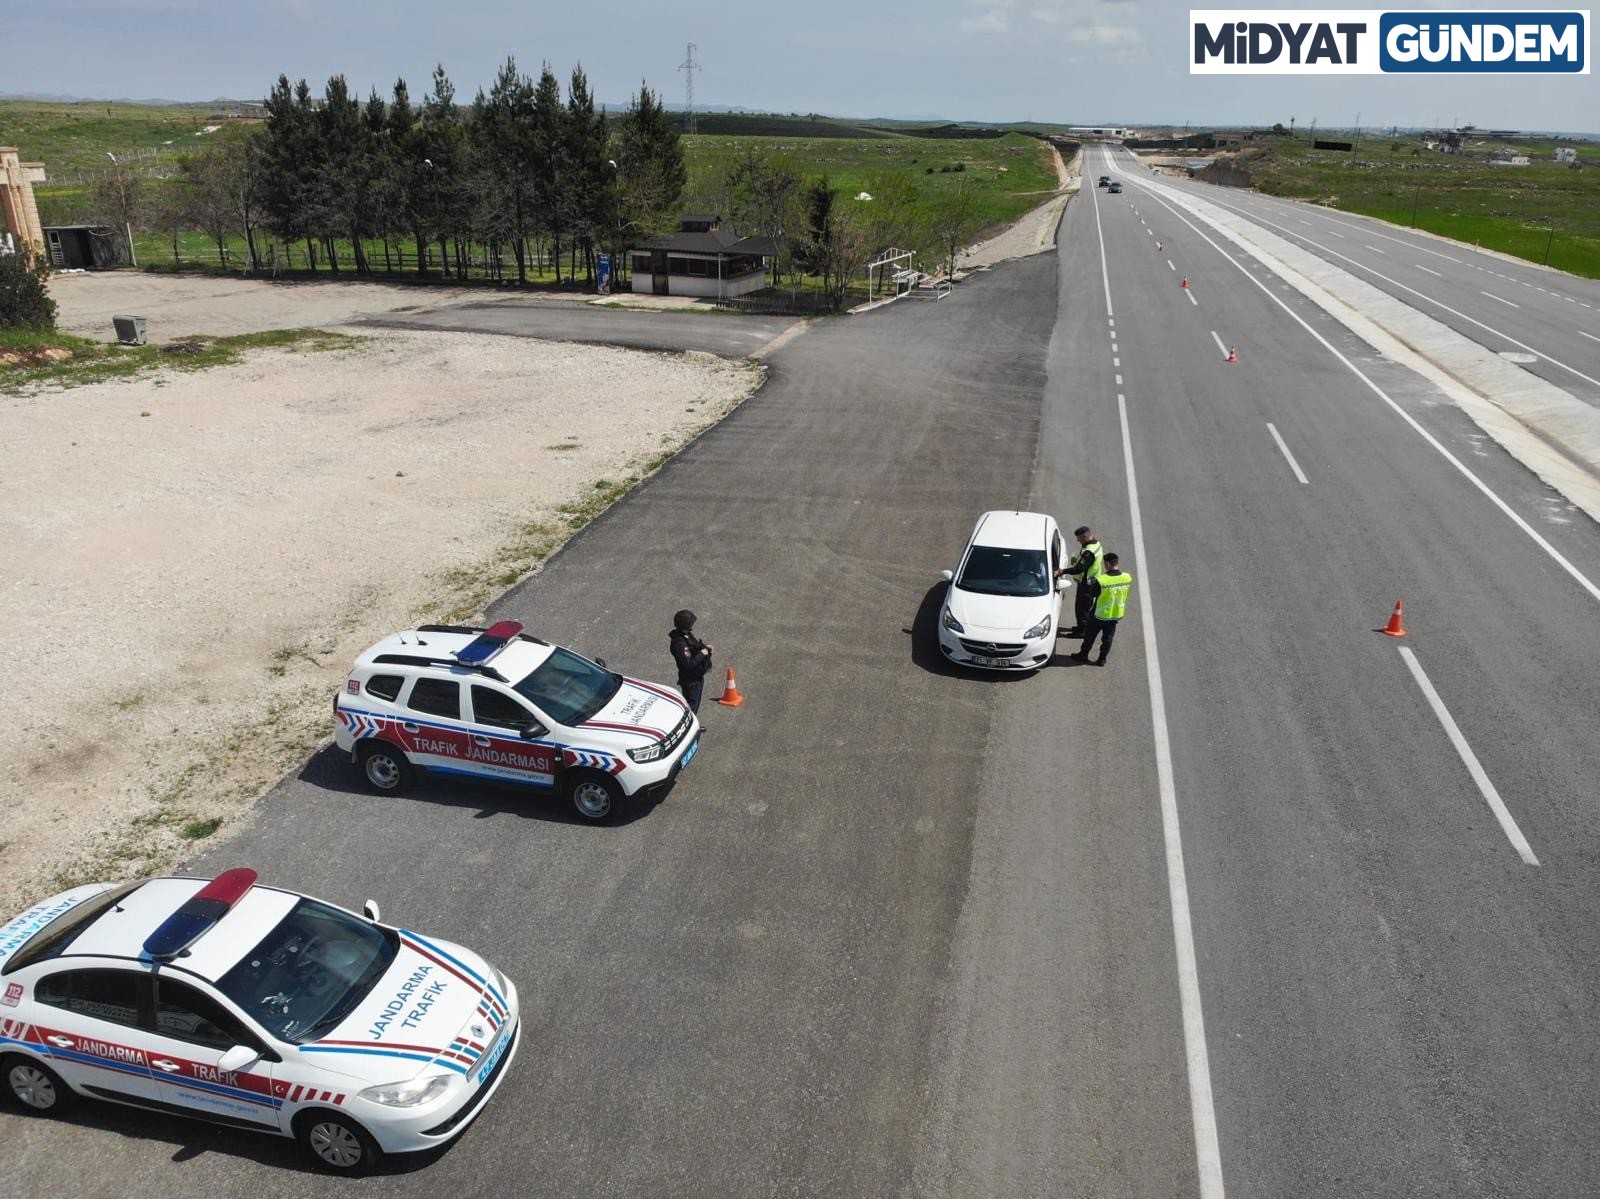 Midyat'ta Trafik Haftası Etkinliği Düzenlendi (1)